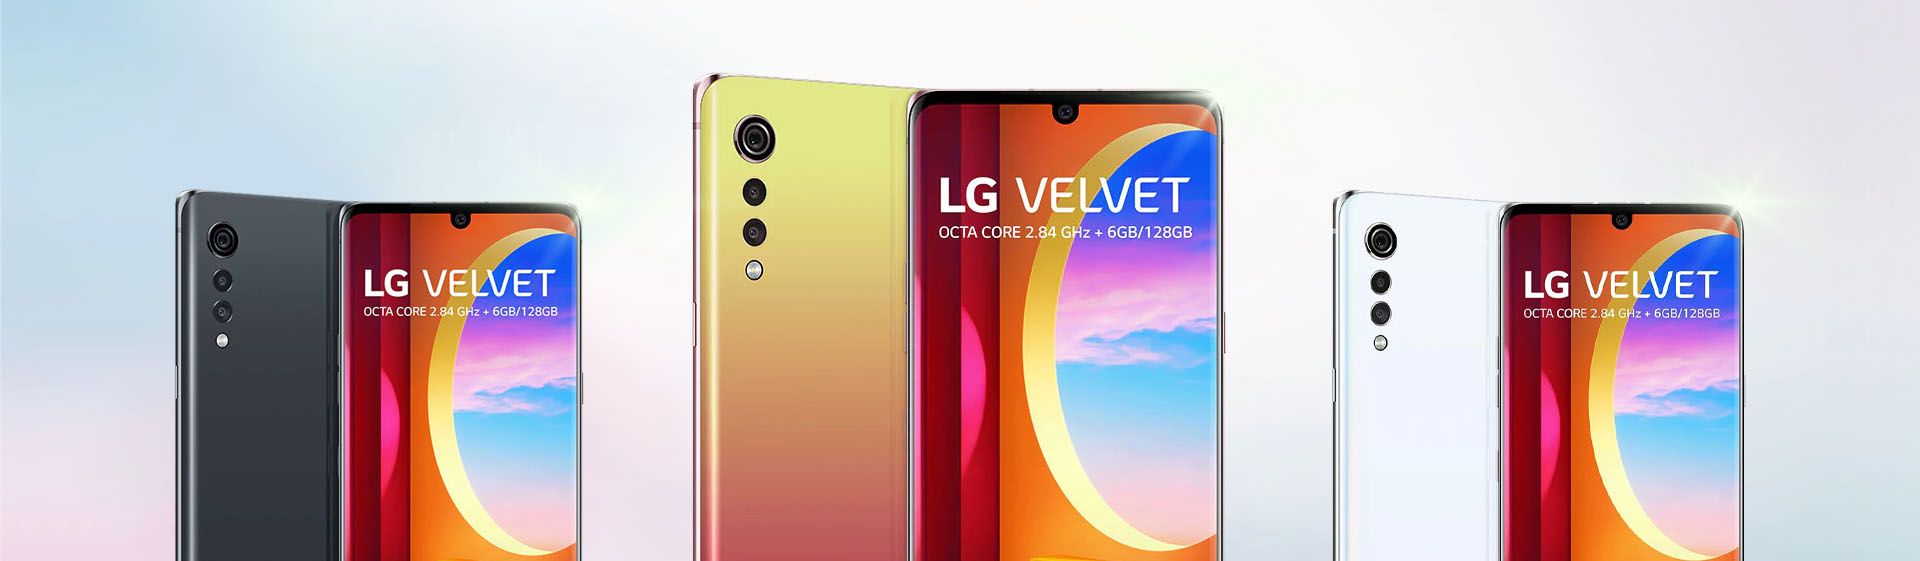 Capa do post: LG Velvet: conheça preço e detalhes do lançamento do novo smartphone